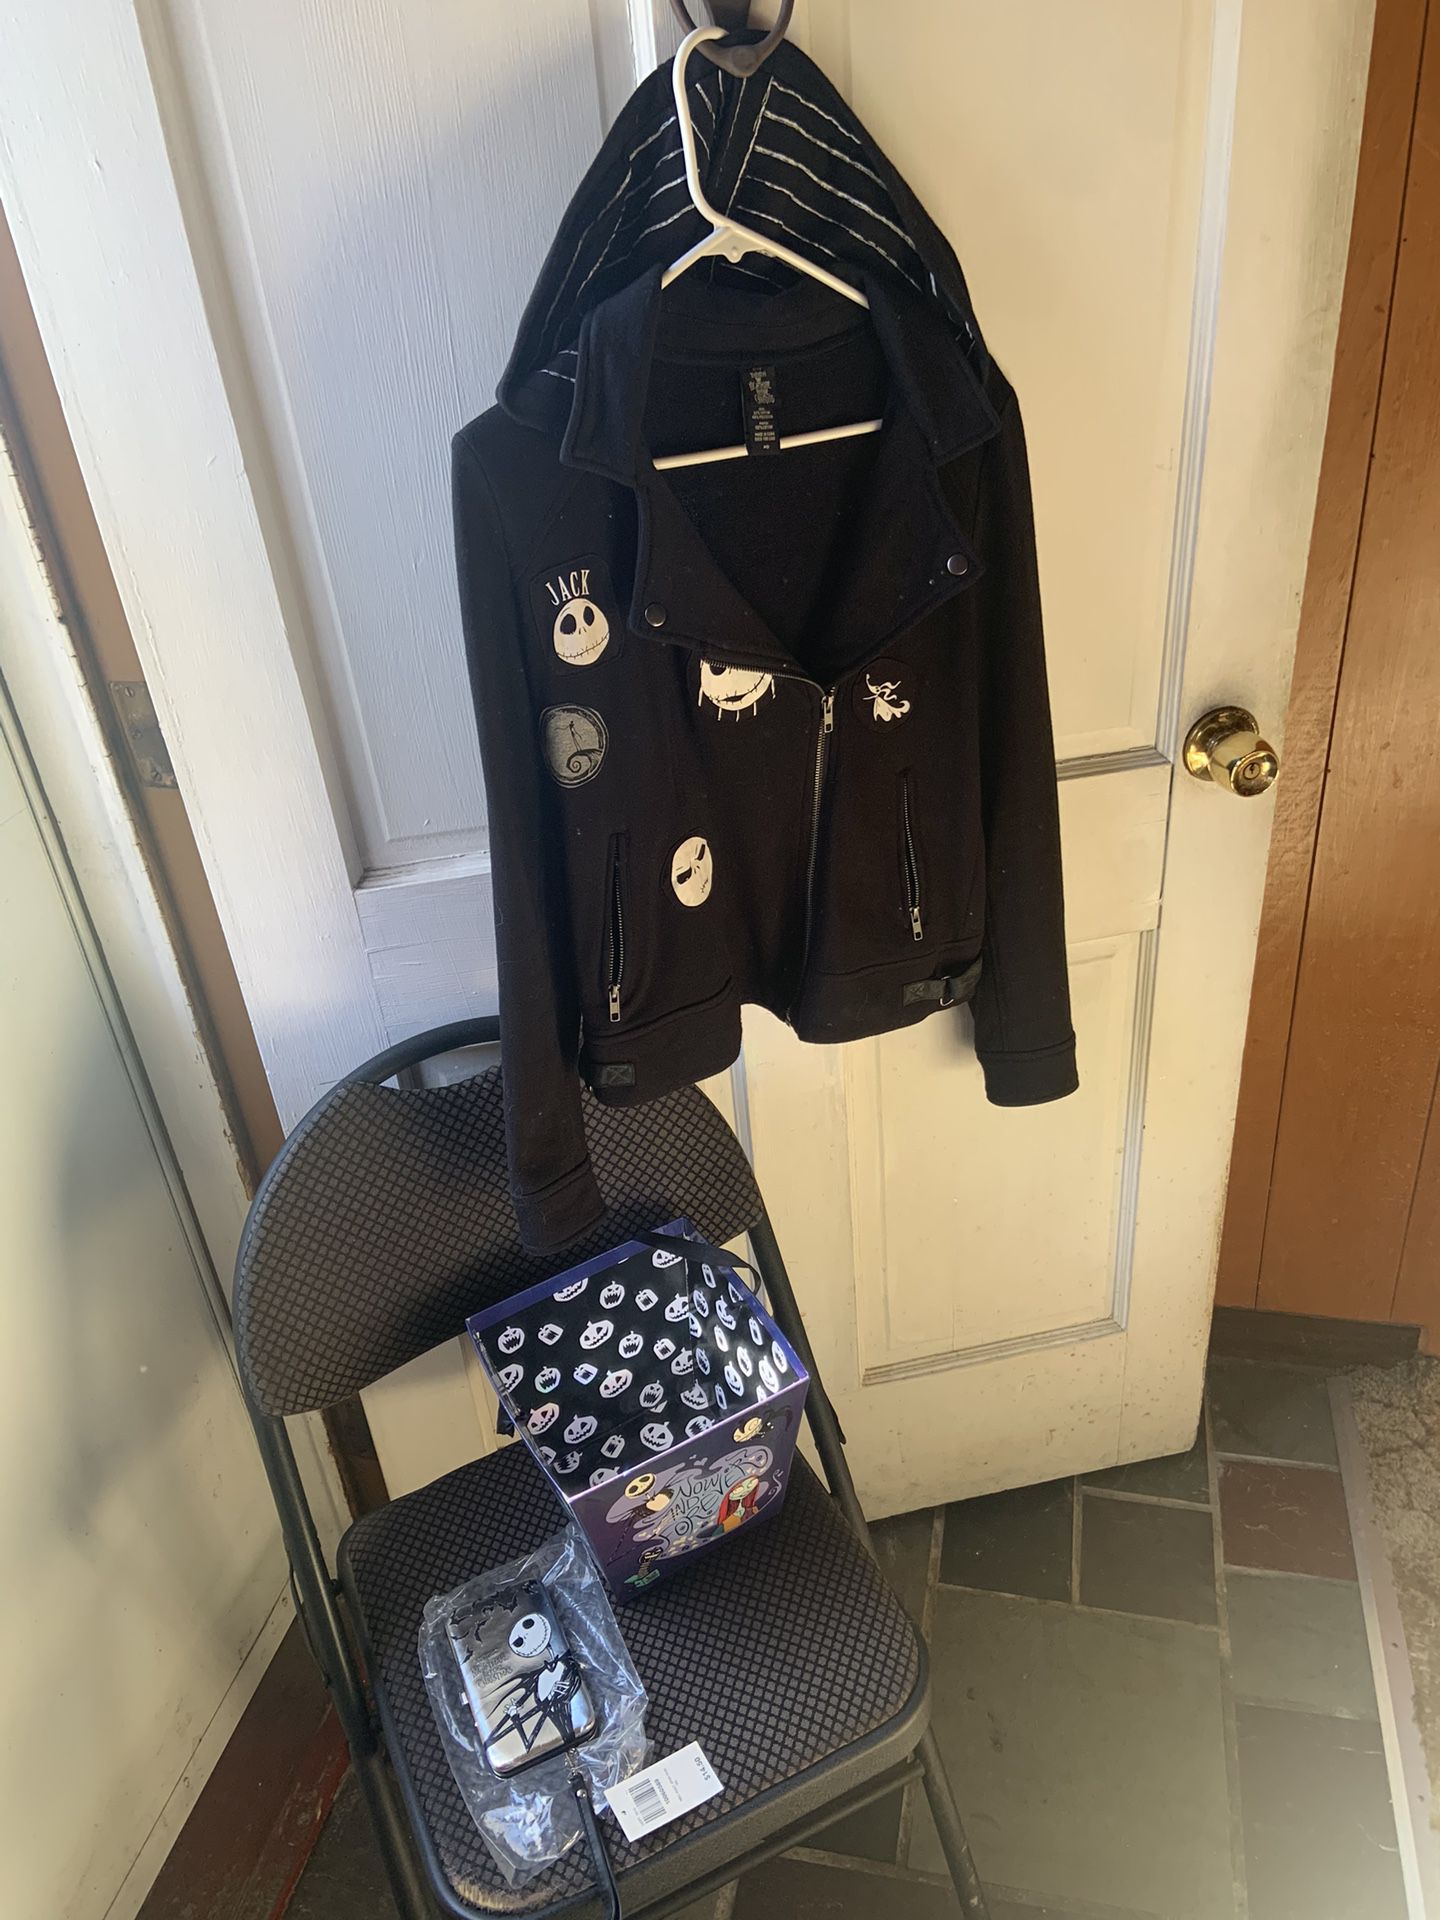 New Motorcycle Jacket  Pop Fan  Culture .. Disney ..  Jack Skellington Nightmare Before Xmas Memorabilia Motorcycle Jacket,   Card Case, And  Bucket